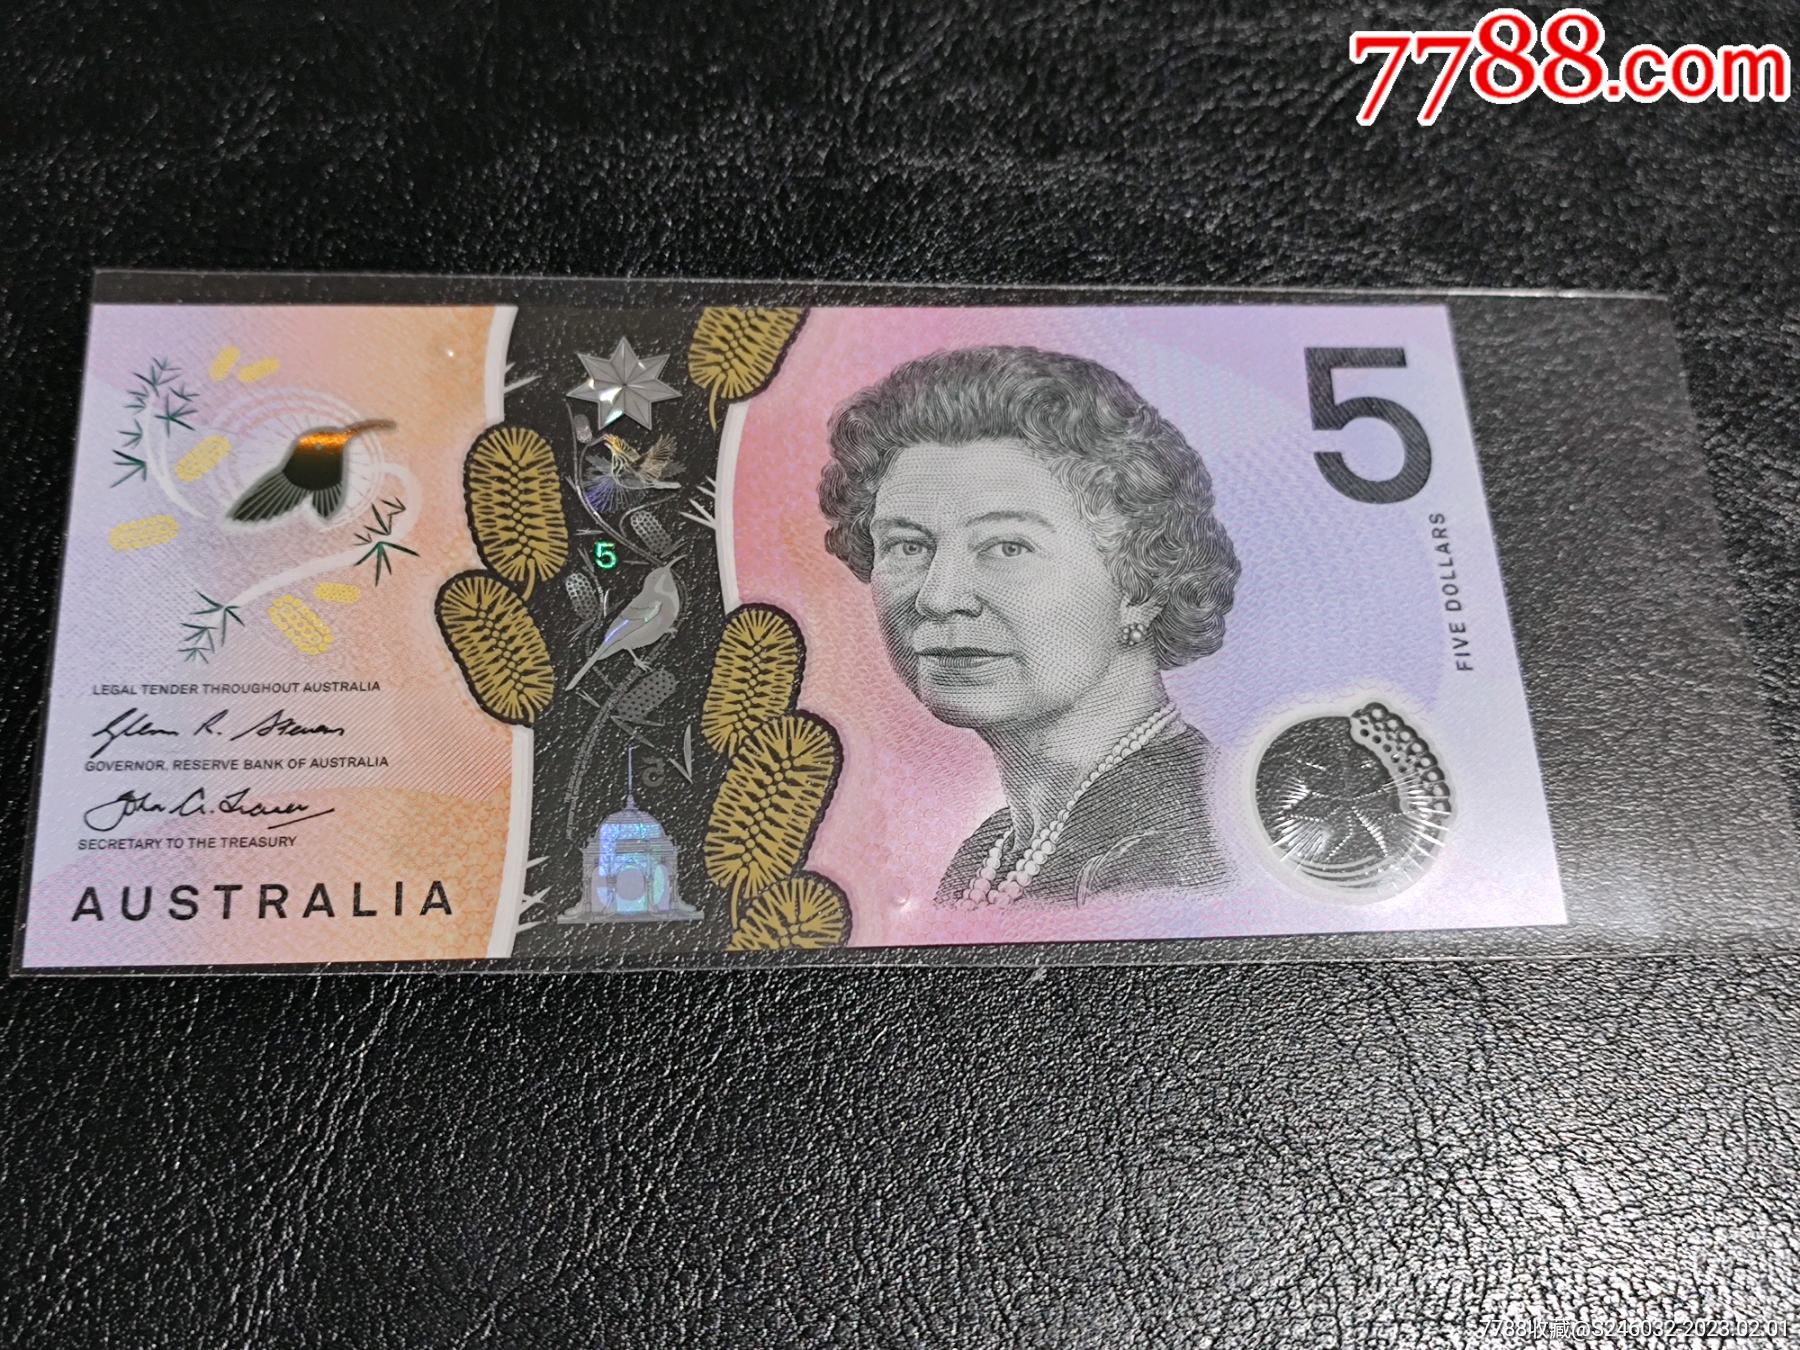 澳大利亚发行了4000多万张印错的纸币 - 2019年5月9日, 俄罗斯卫星通讯社